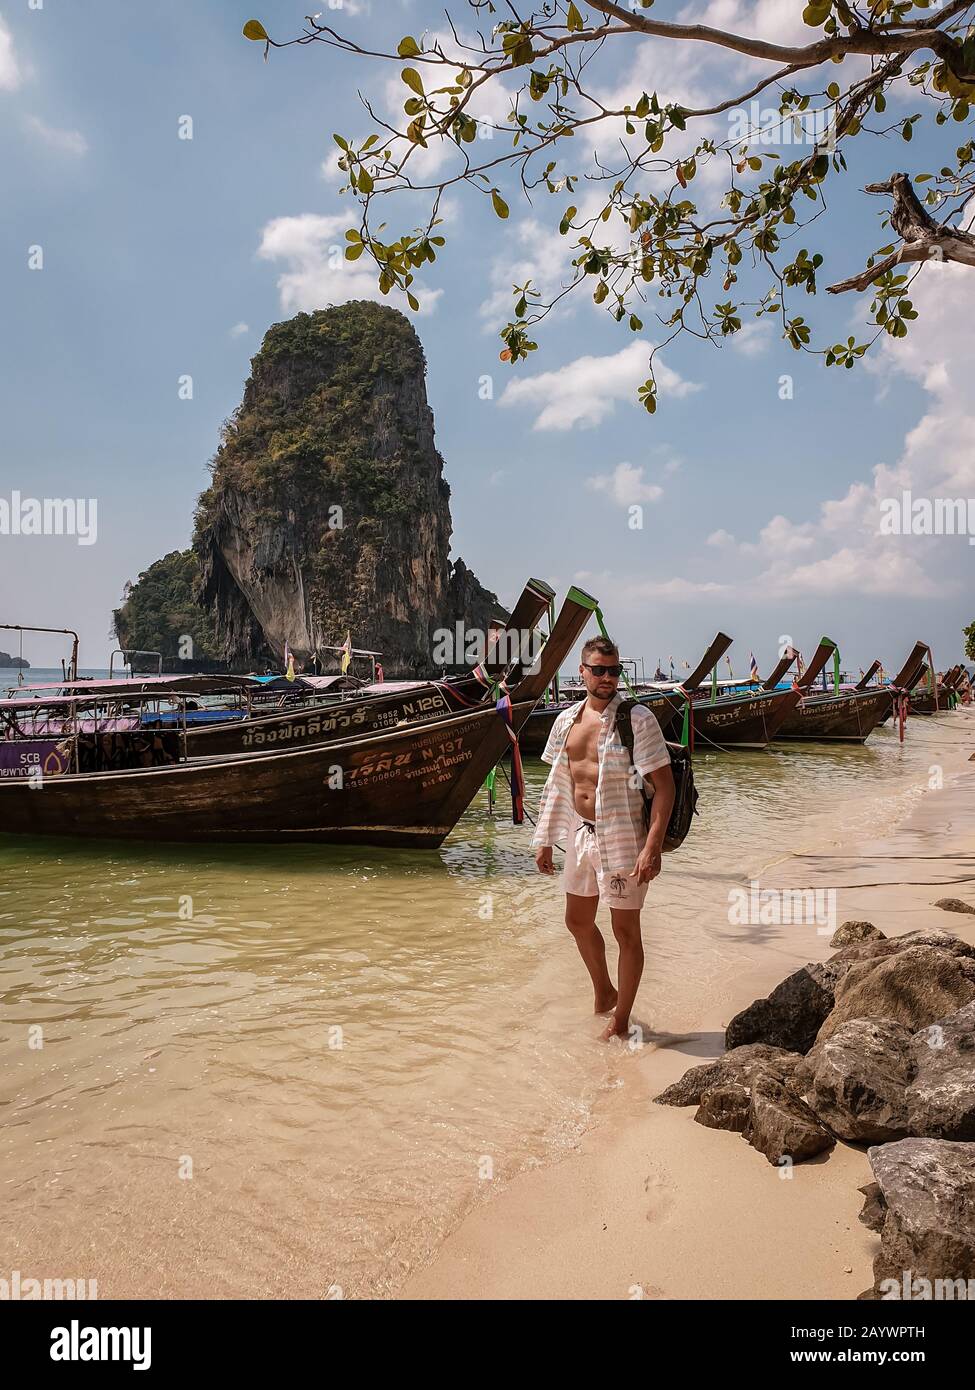 Krabi Thailand Januar 2020, Touristen am Strand, Railay Strand mit einer schönen Kulisse der Insel Ko Rang Nok In Thailand Krabi Stockfoto